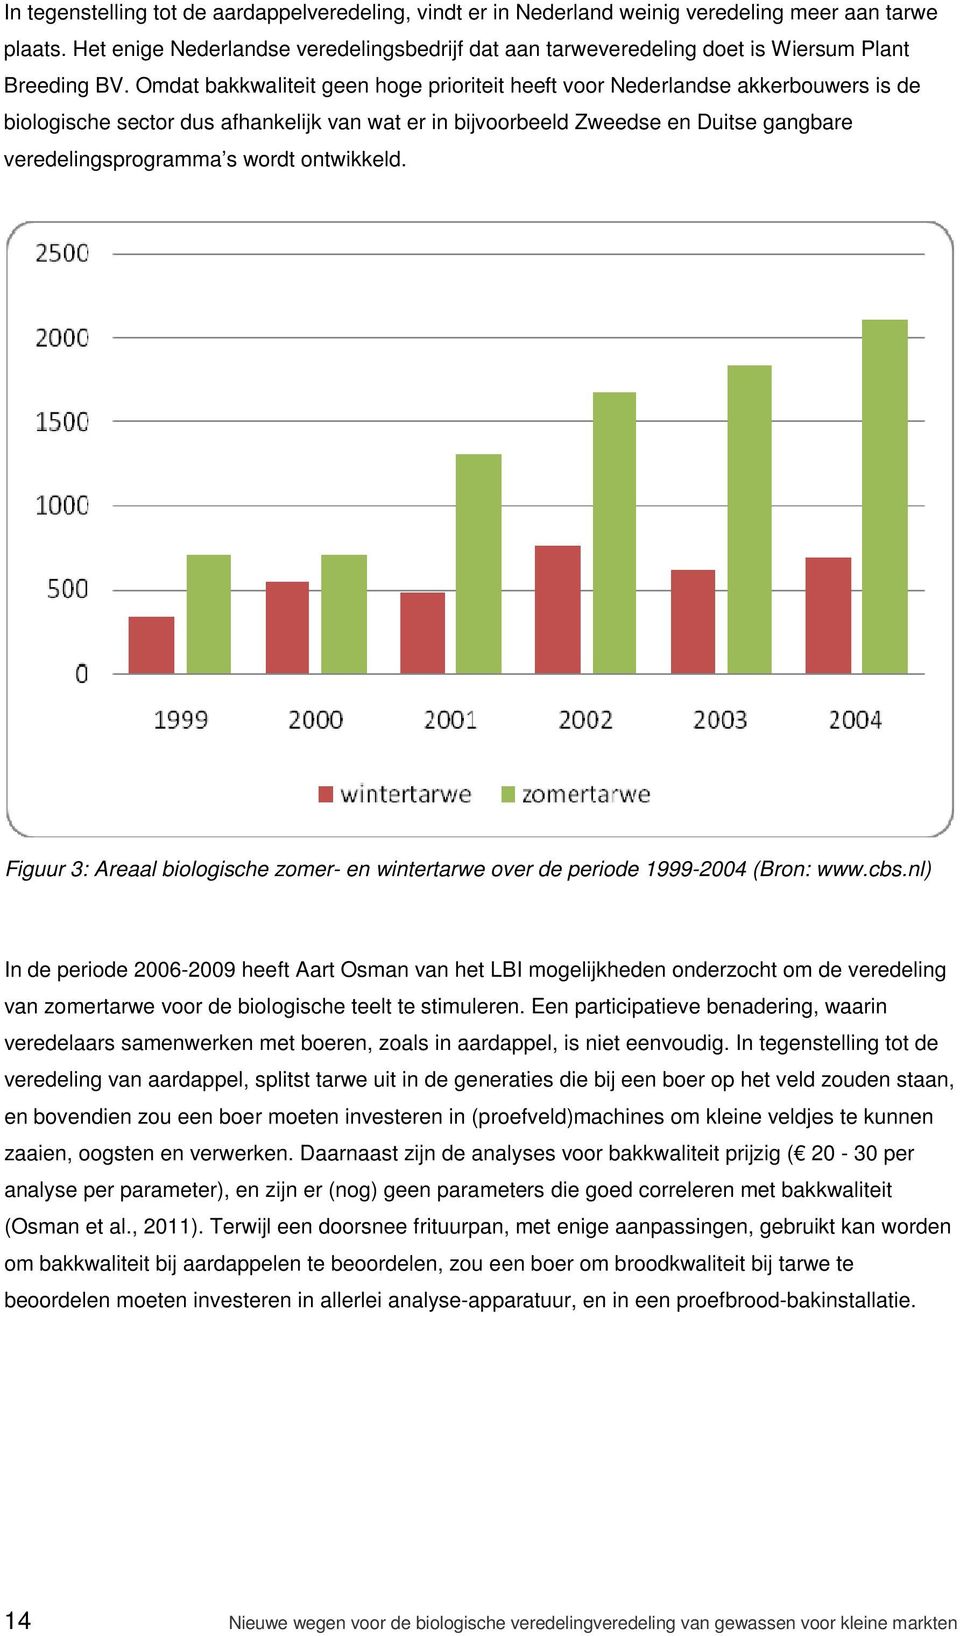 Omdat bakkwaliteit geen hoge prioriteit heeft voor Nederlandse akkerbouwers is de biologische sector dus afhankelijk van wat er in bijvoorbeeld Zweedse en Duitse gangbare veredelingsprogramma s wordt